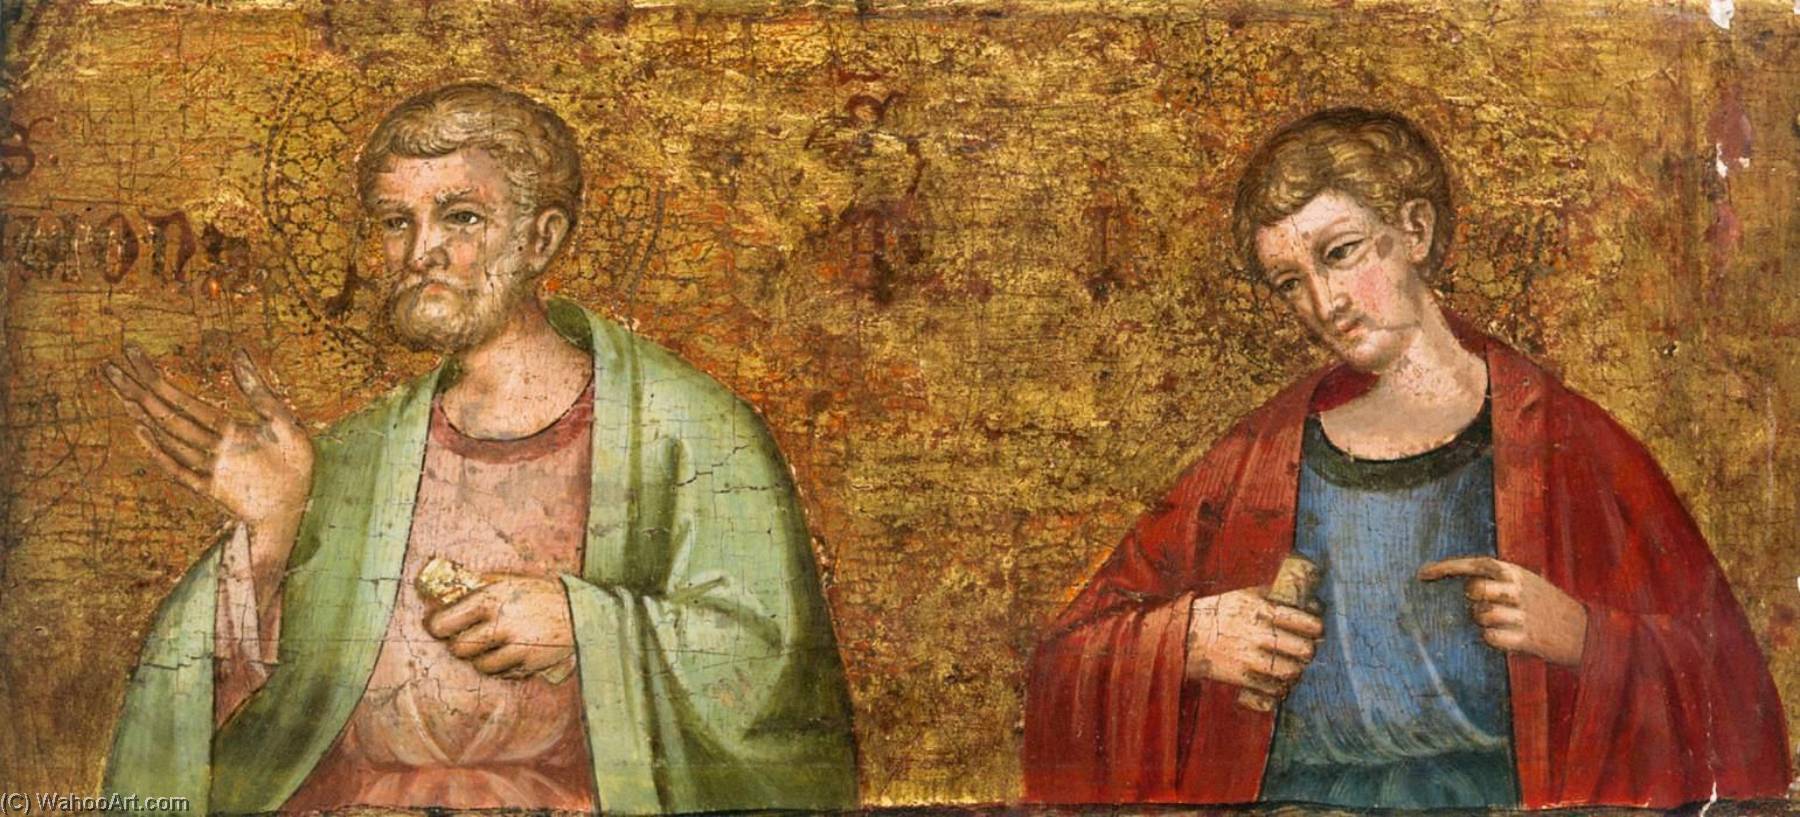 WikiOO.org - Encyclopedia of Fine Arts - Maleri, Artwork Meneghello Di Giovanni De' Canali - Altarpiece of the Virgin Mary (predella fragment)